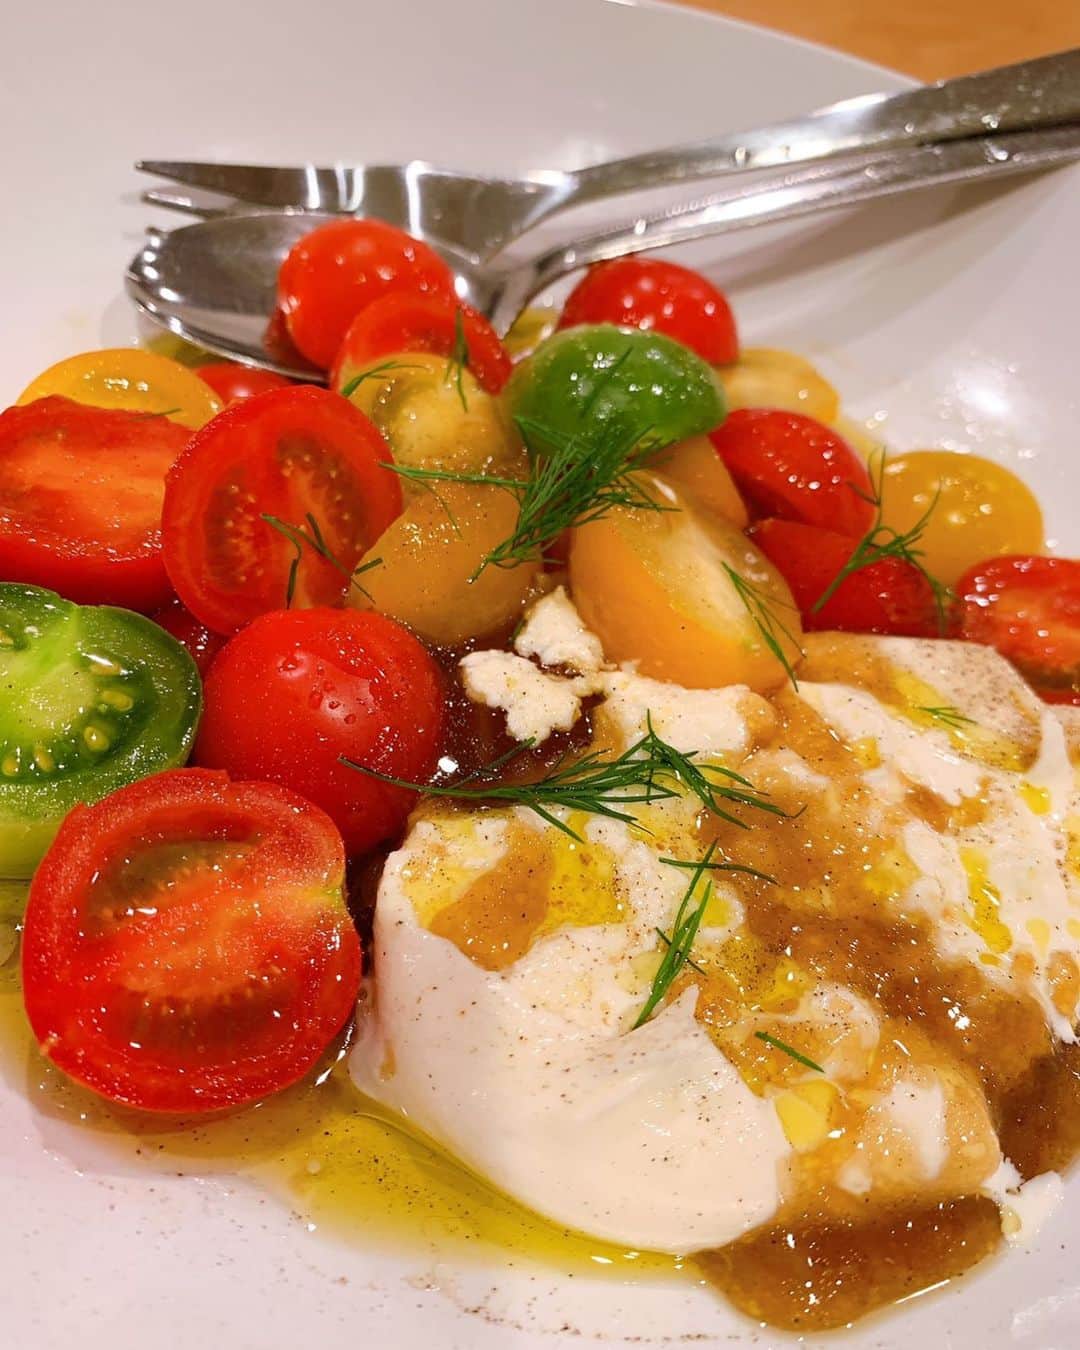 梶本成美さんのインスタグラム写真 梶本成美instagram なる飯 久しぶりのなる飯投稿 こちらは ブラータ チーズとトマトのカプレーゼ 広尾にあるイタリアンのボッテガさんの味付けをパクらせていただきました 美味しッ ブラータ